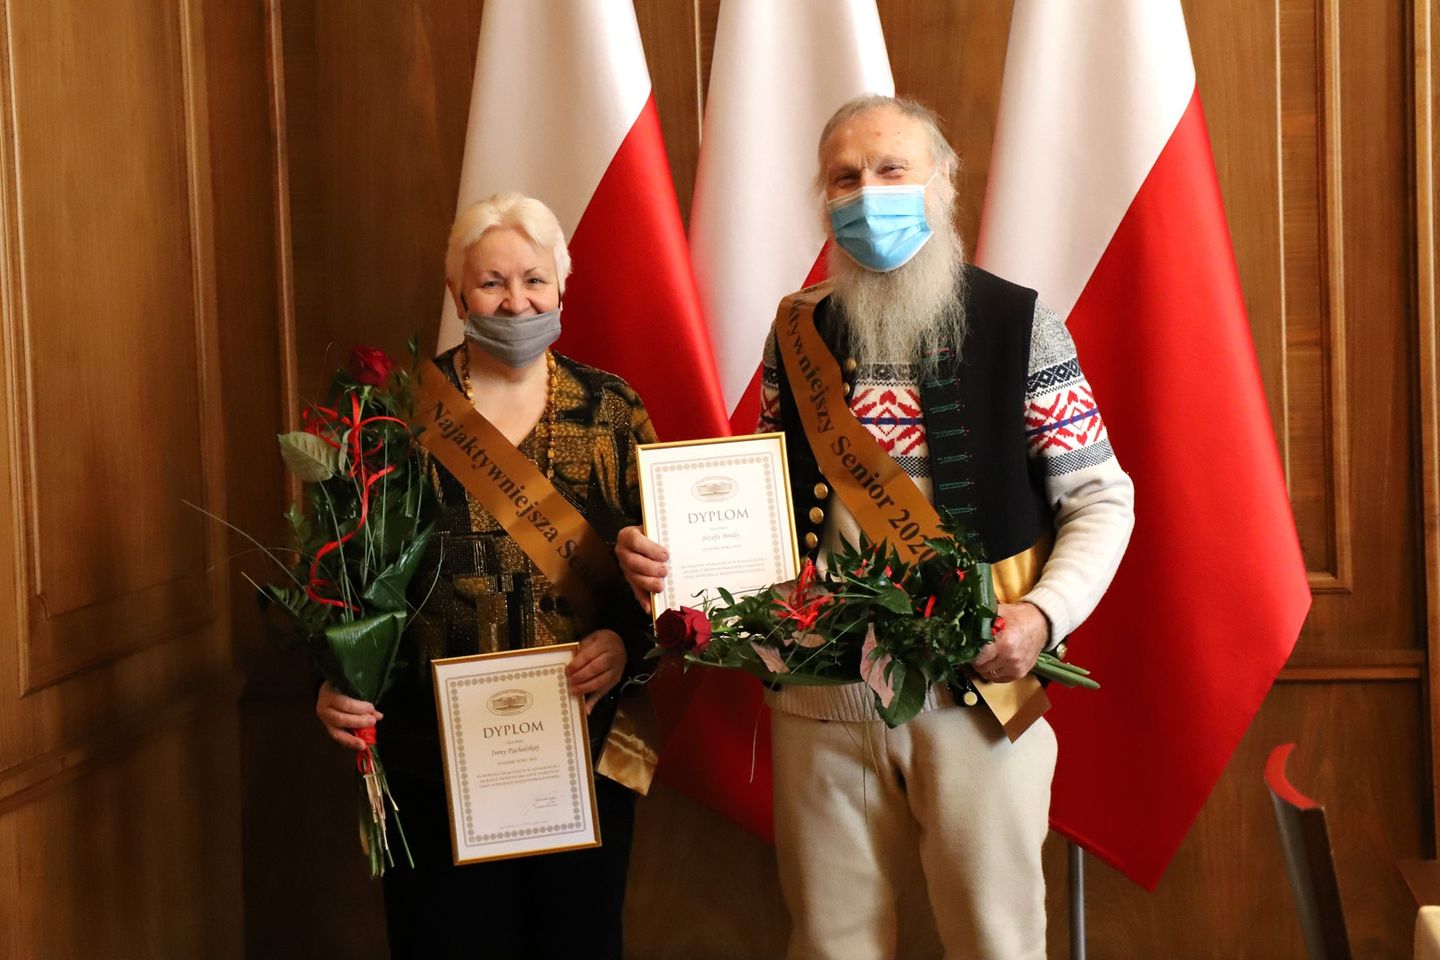 konieta i mężczyzna stoja z rękach trzymają dyplomy i kwiaty, w tle falgi państwowe Polski